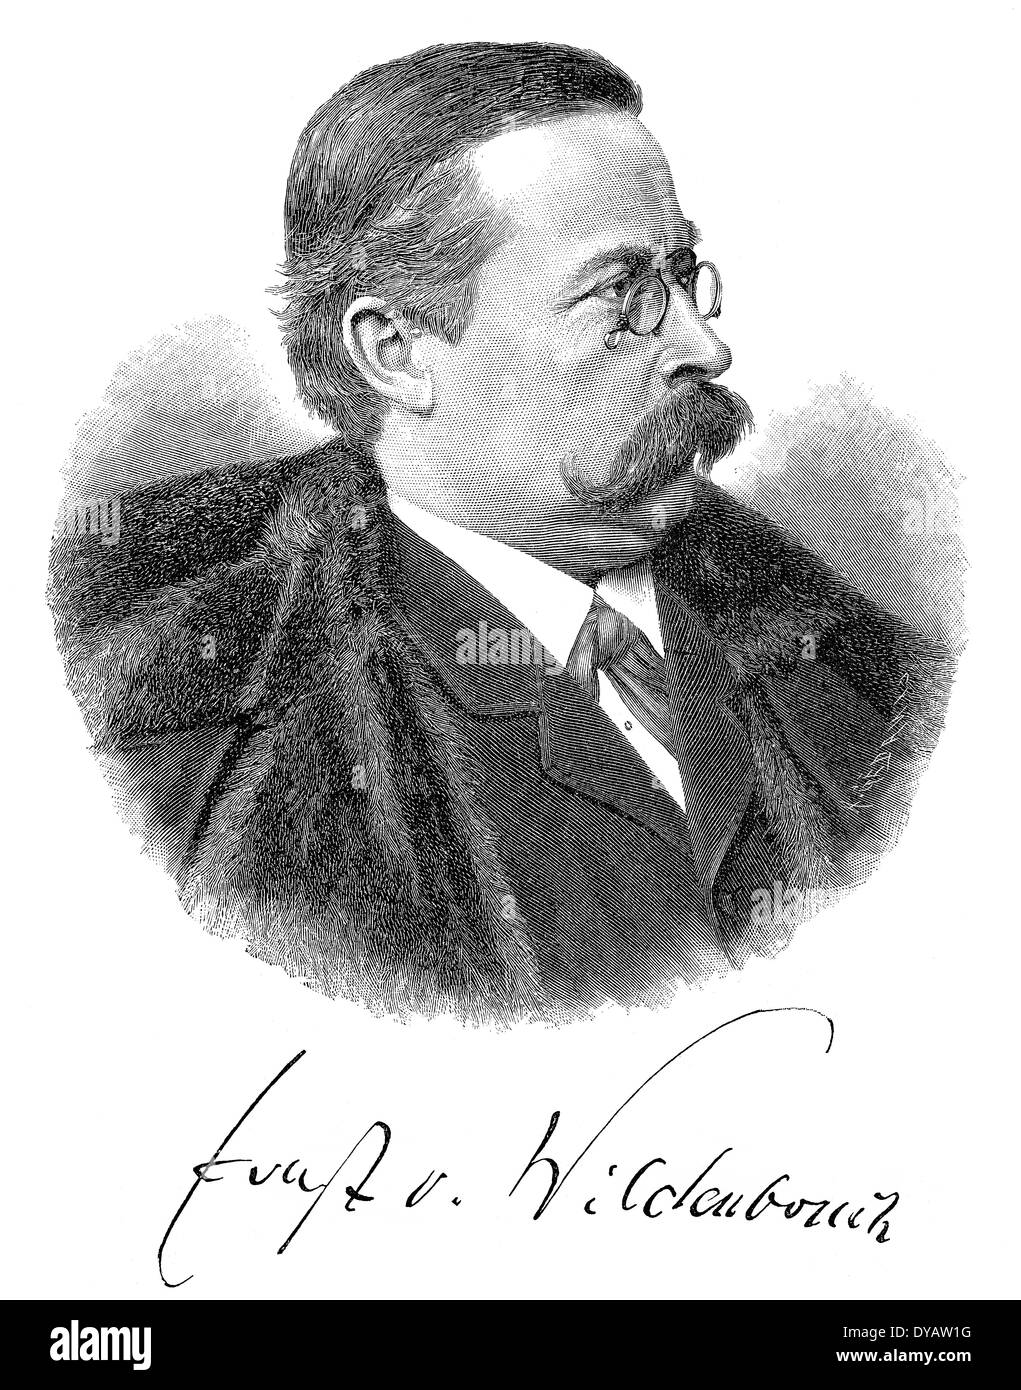 Ernst von Wildenbruch, 1845 - 1909, a German poet and dramatist, Stock Photo